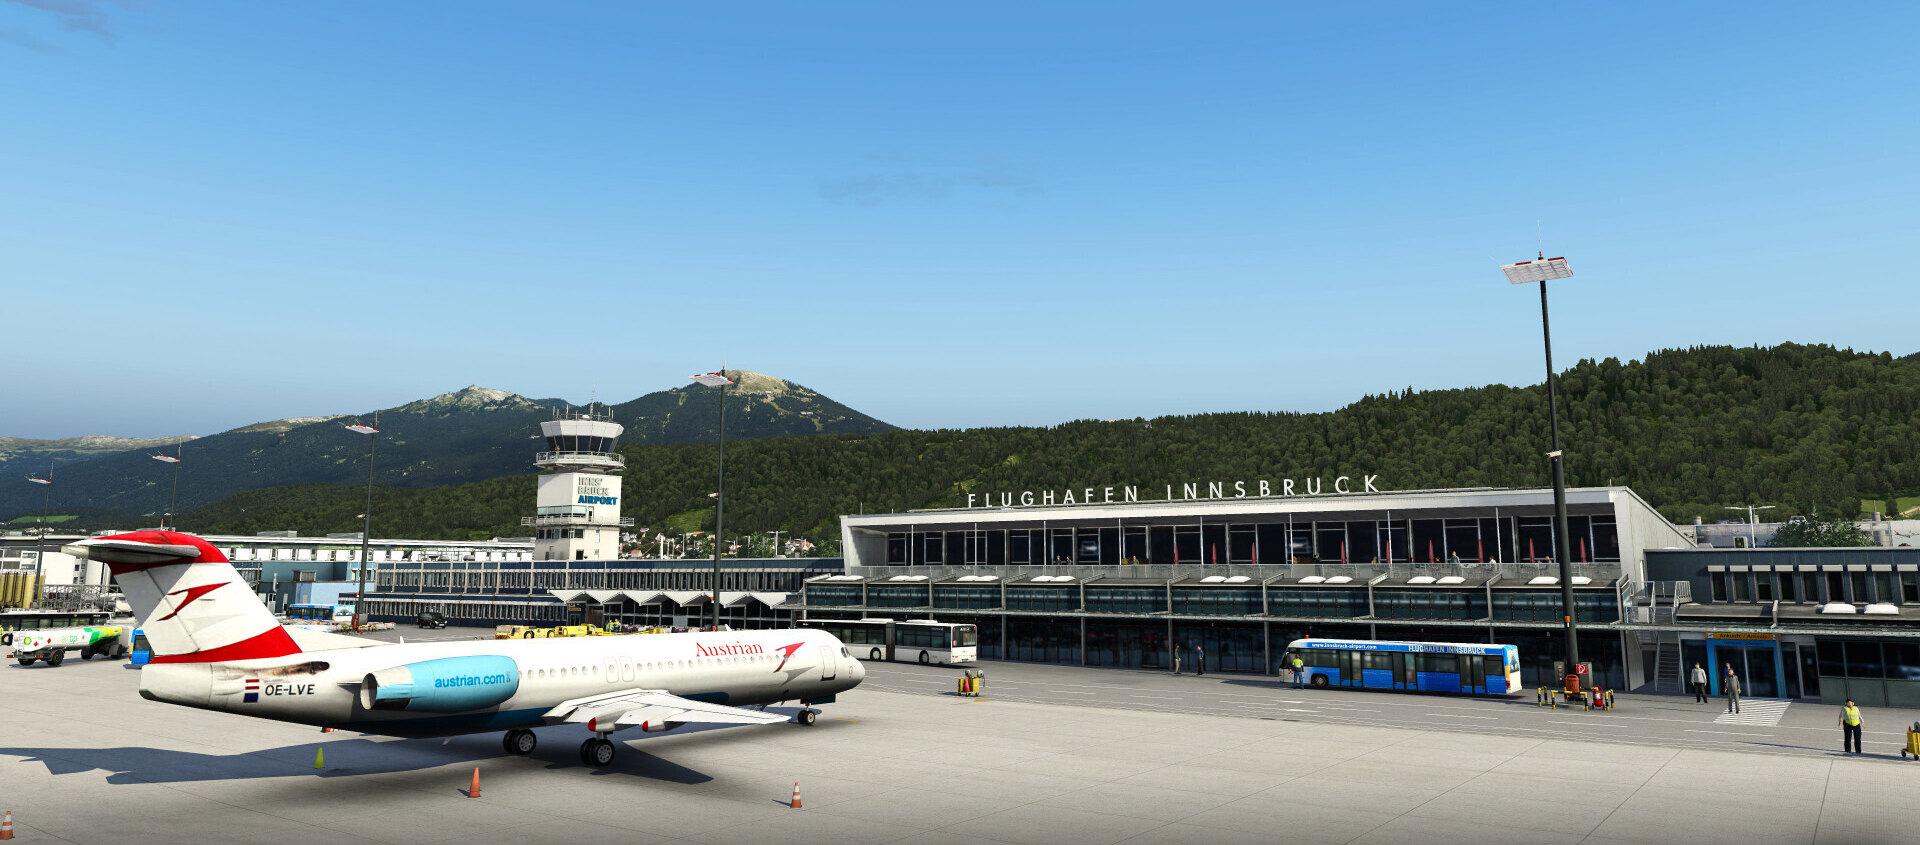 Orbx Flughafen Innsbruck Release